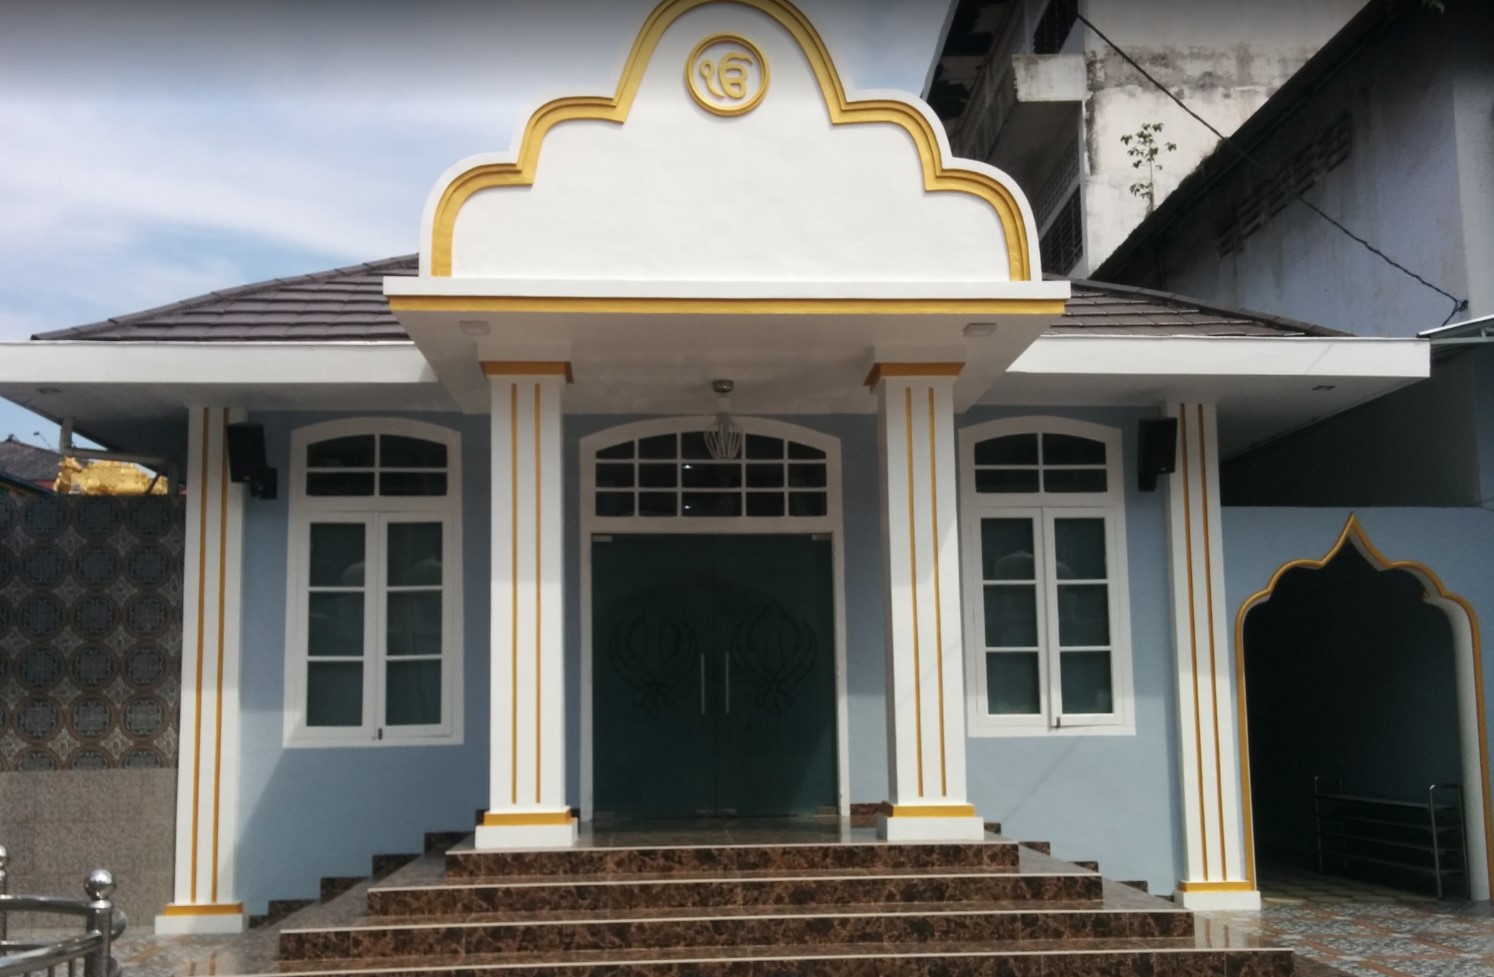 Gurudwara Sri Guru Nanak Dev Ji – Medan